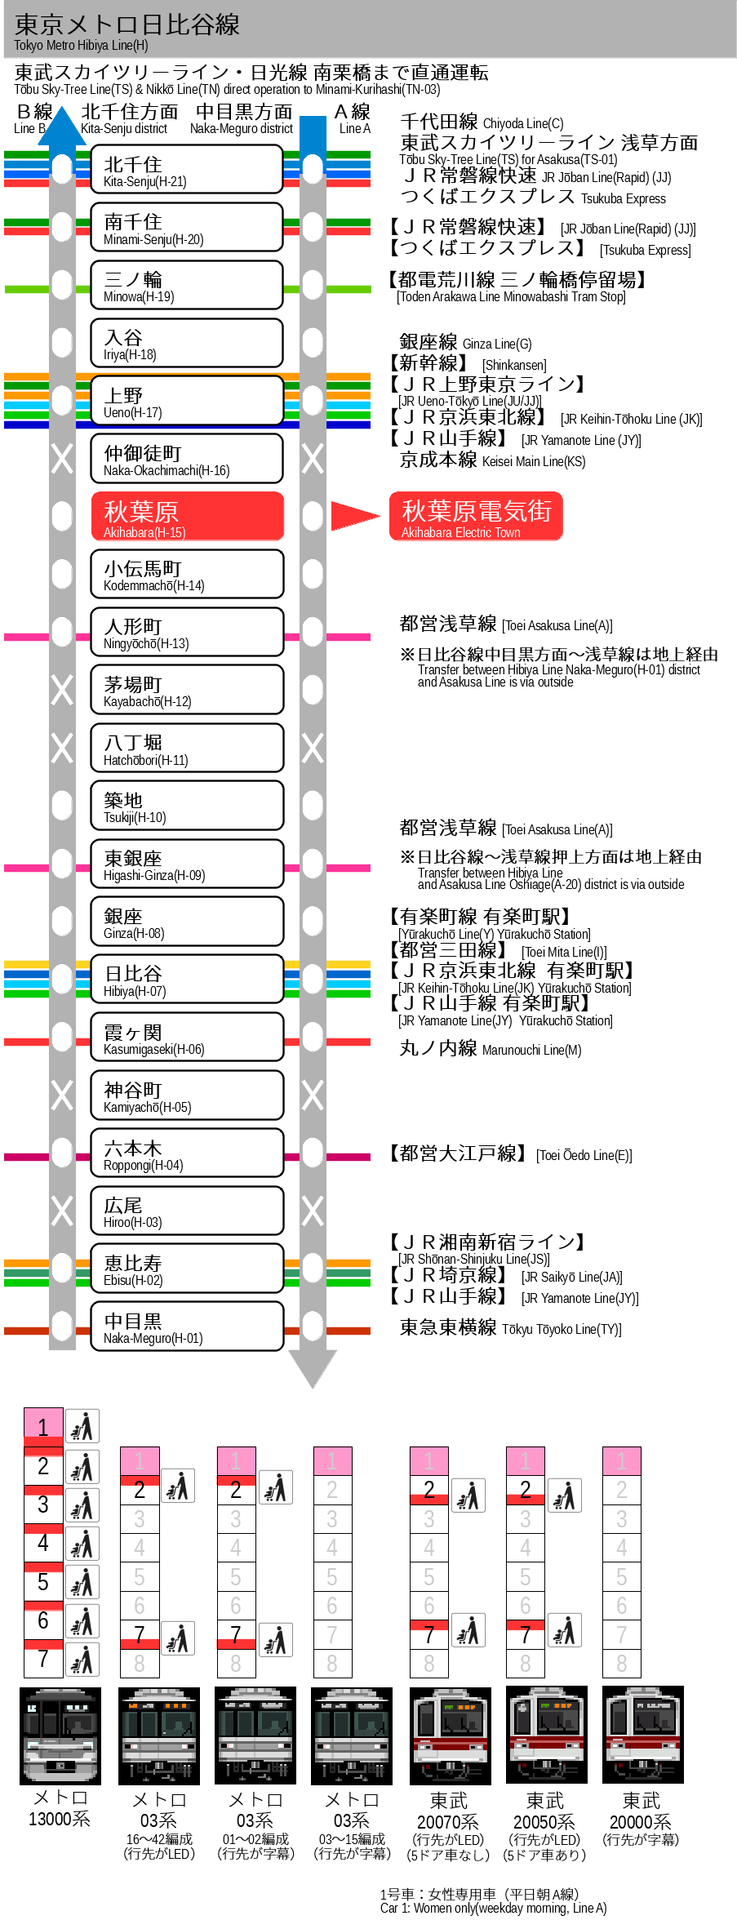 ベビーカーのための東京メトロ日比谷線 完全バリアフリー乗換案内 あきばよめブログ